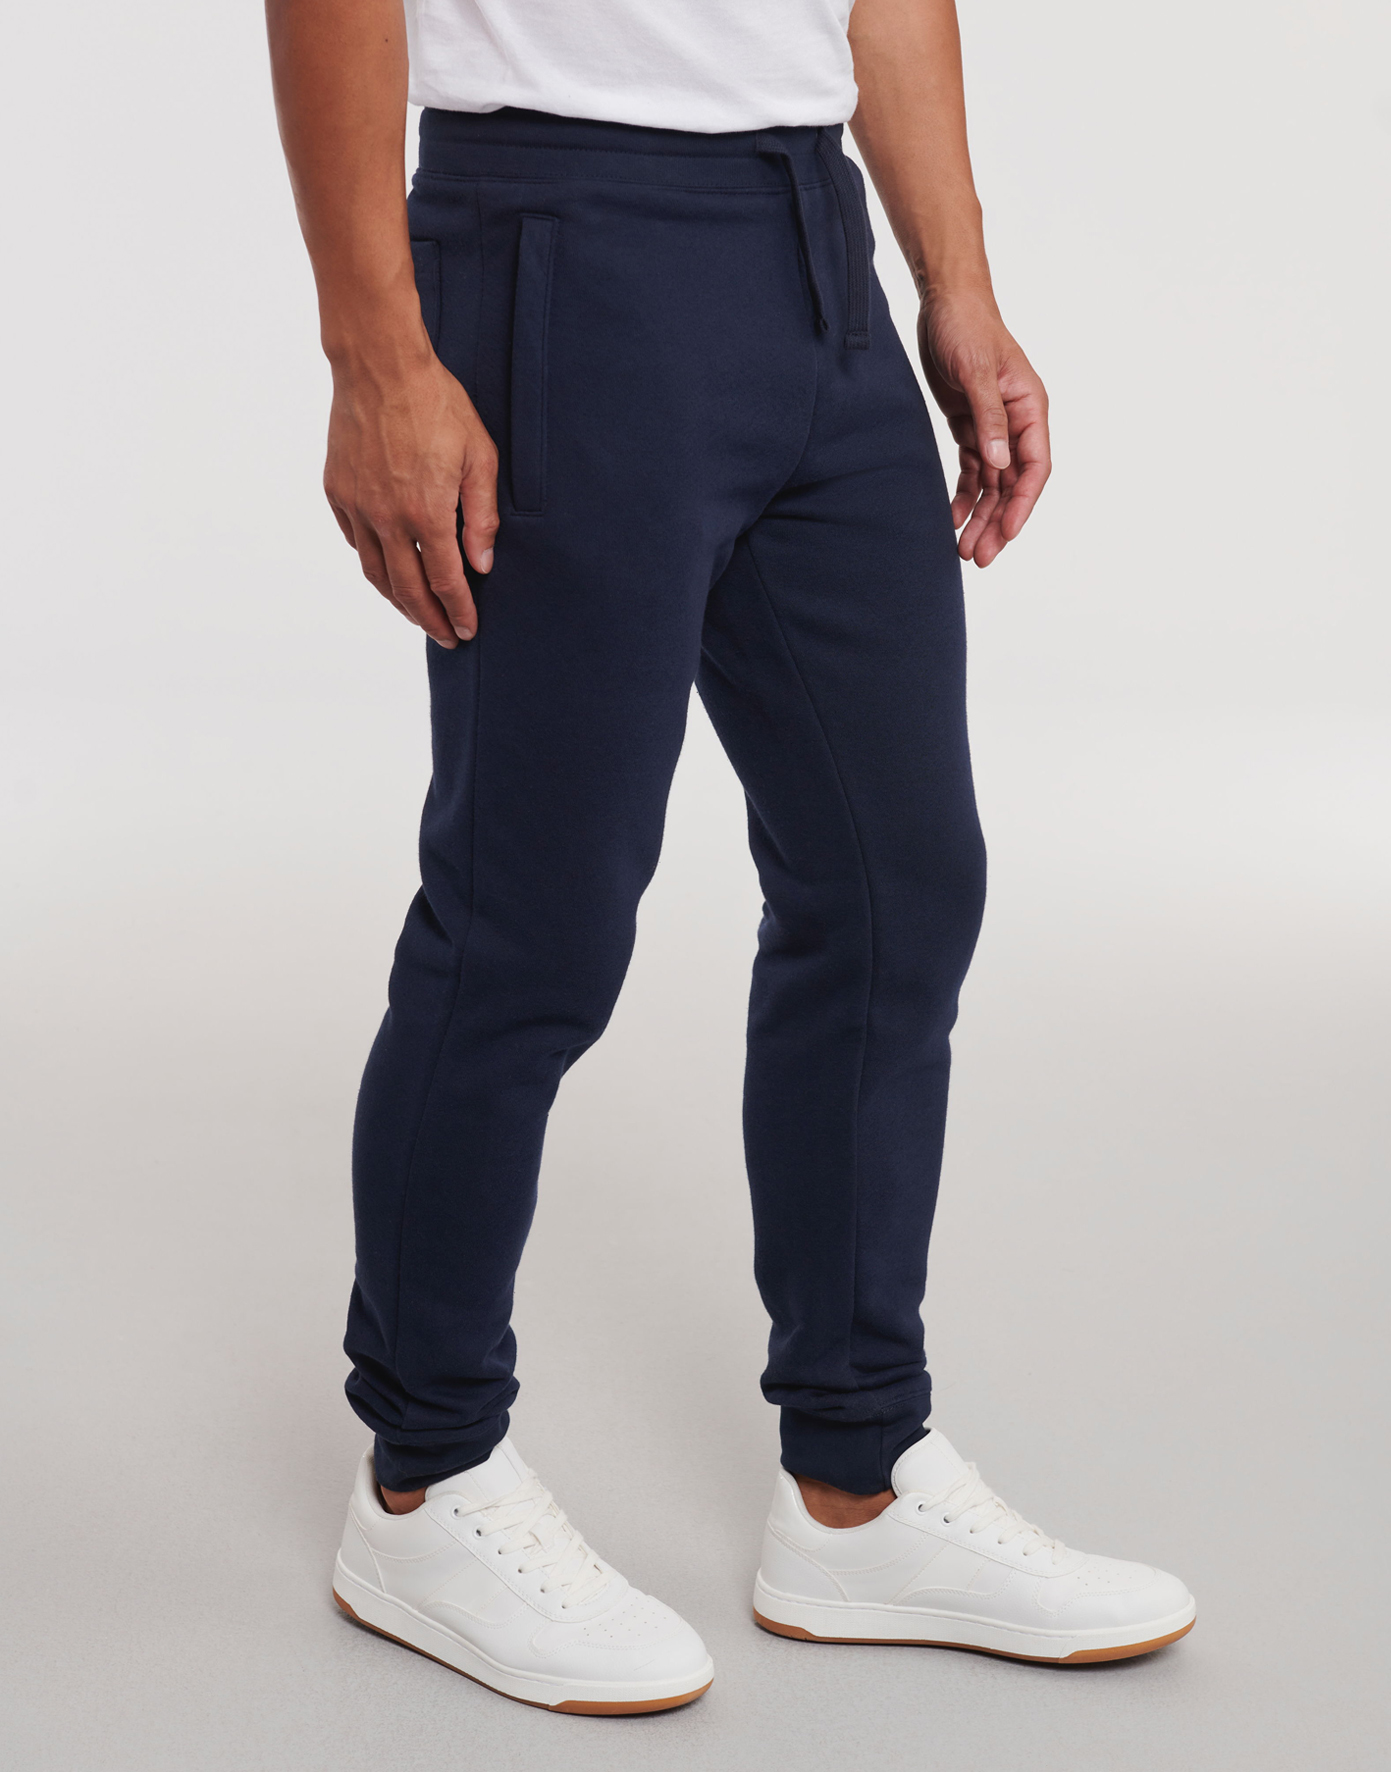 Pánské joggingové kalhoty Velikost: XXL, Barva: Tmavě modrá